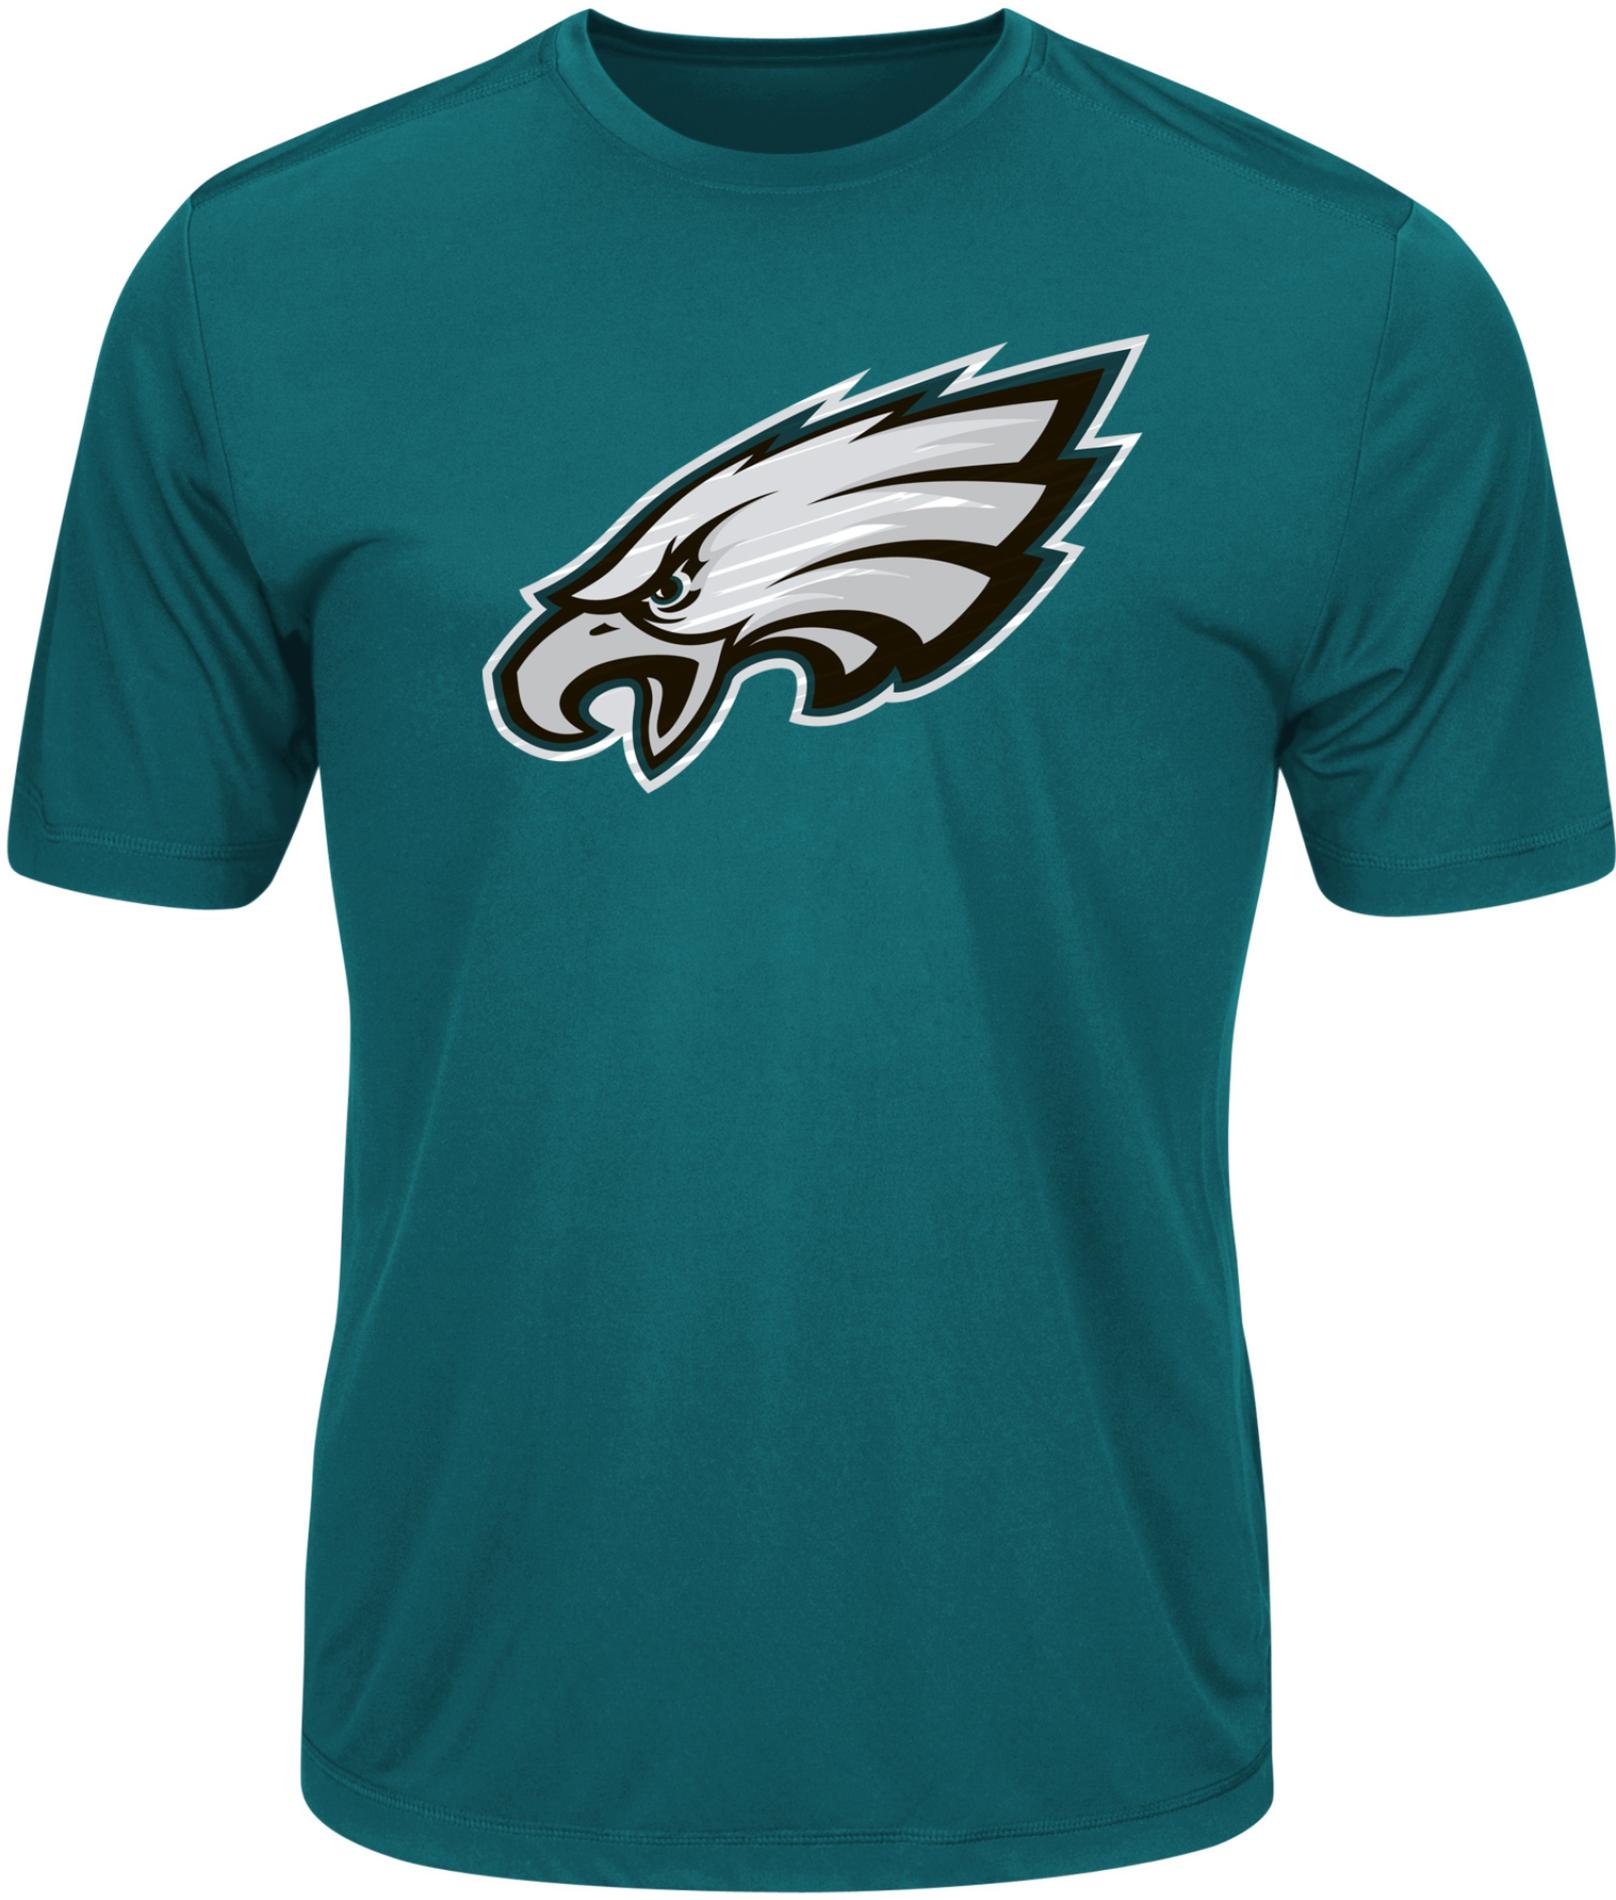 NFL Men's Graphic T-Shirt - Philadelphia Eagles